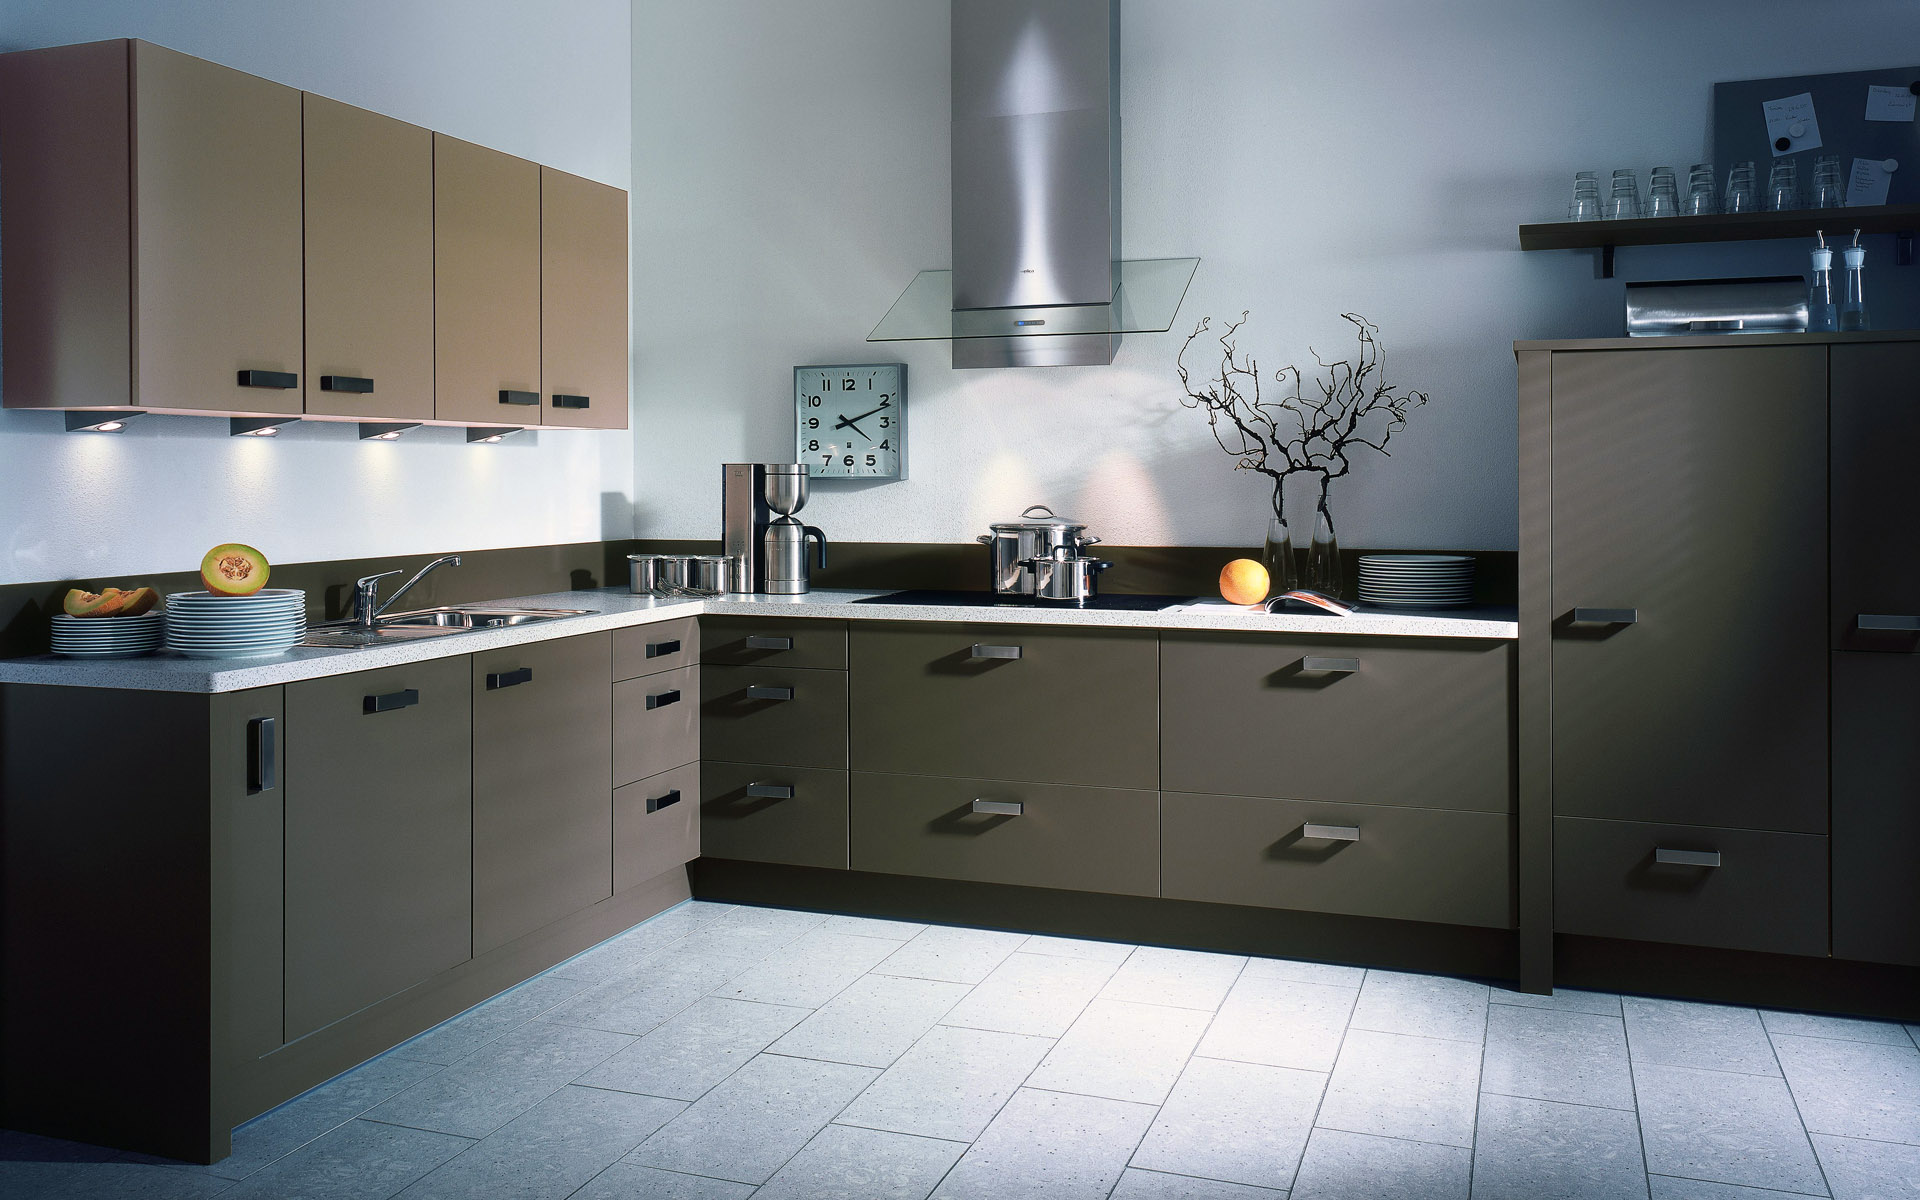 kitchen design photos free download